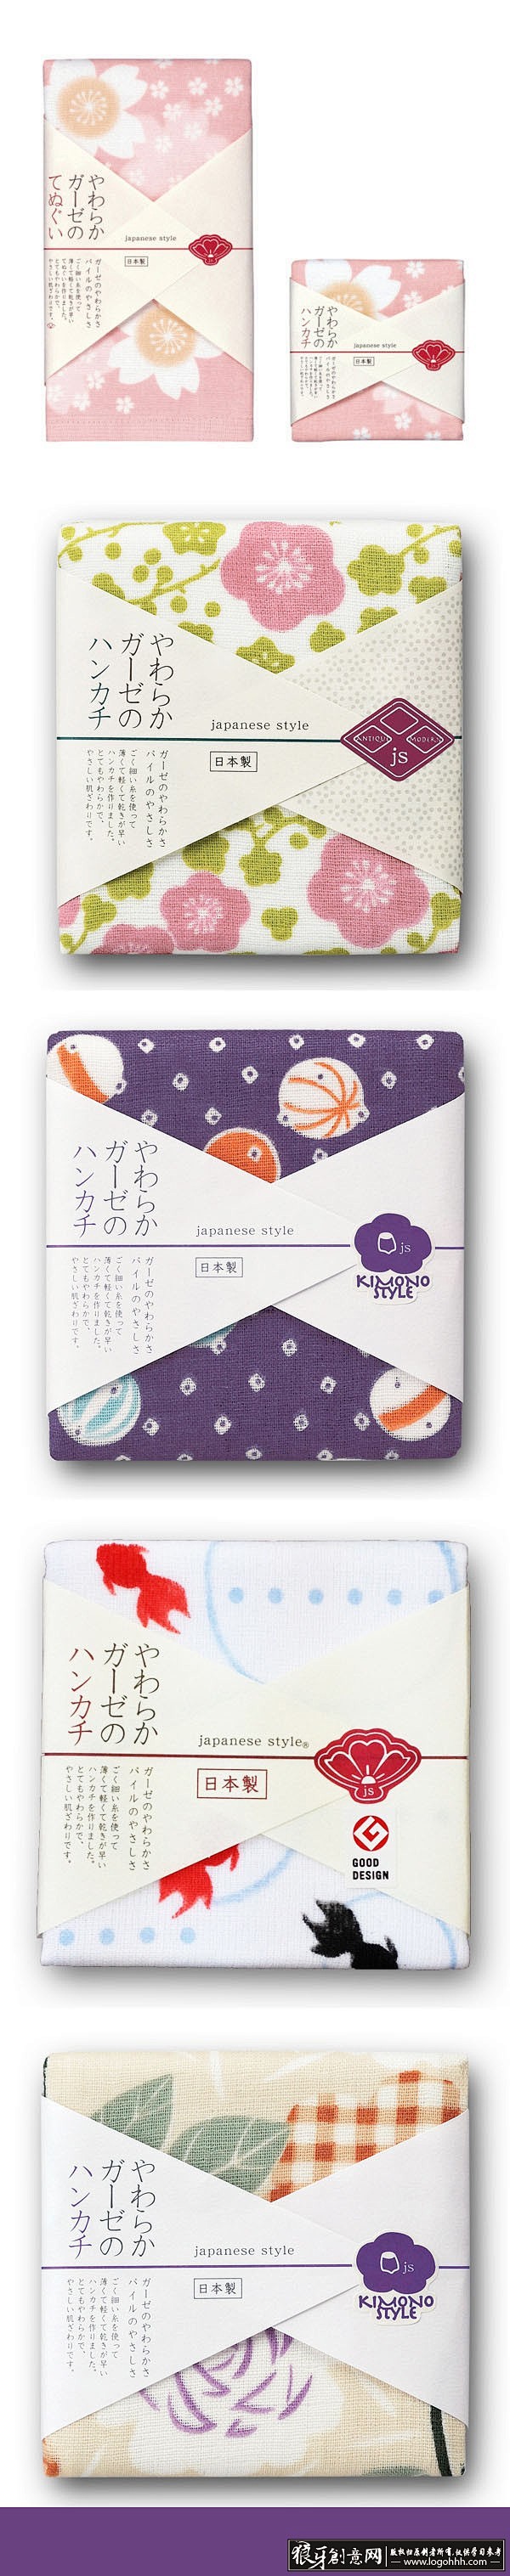 包装设计灵感时尚日本包装设计创意日本礼盒包装精美国外包装设计大气